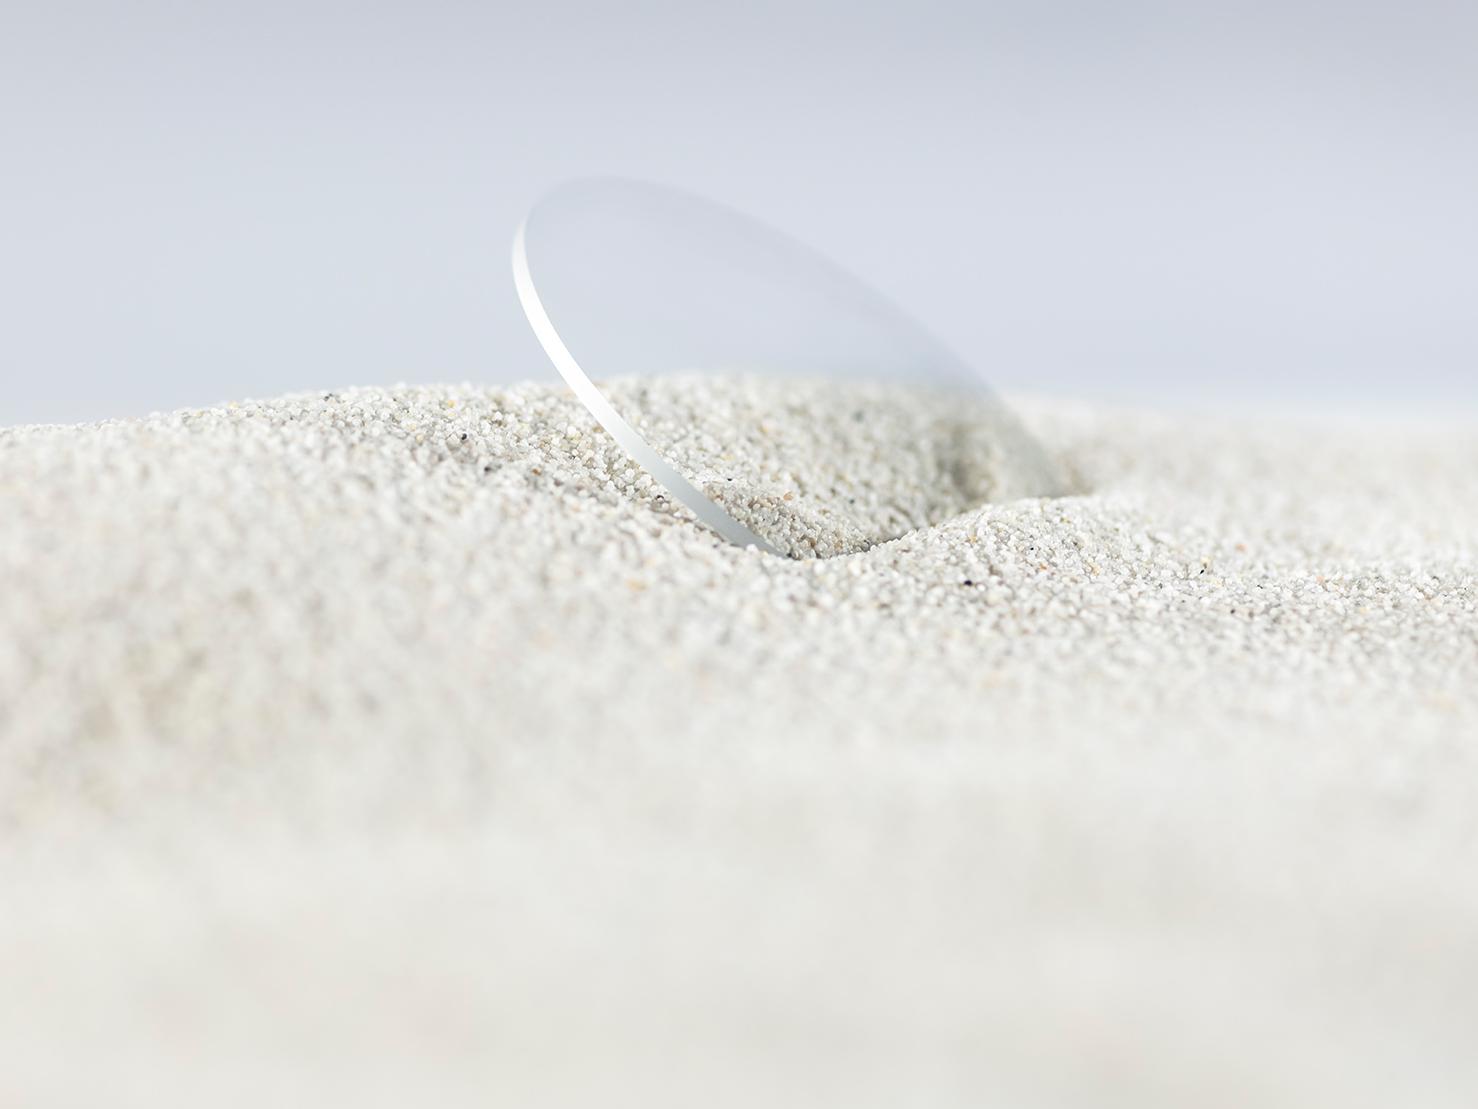 耐久性コーティングを施したツァイスのレンズ。粗めの砂に覆われても傷ついていない。